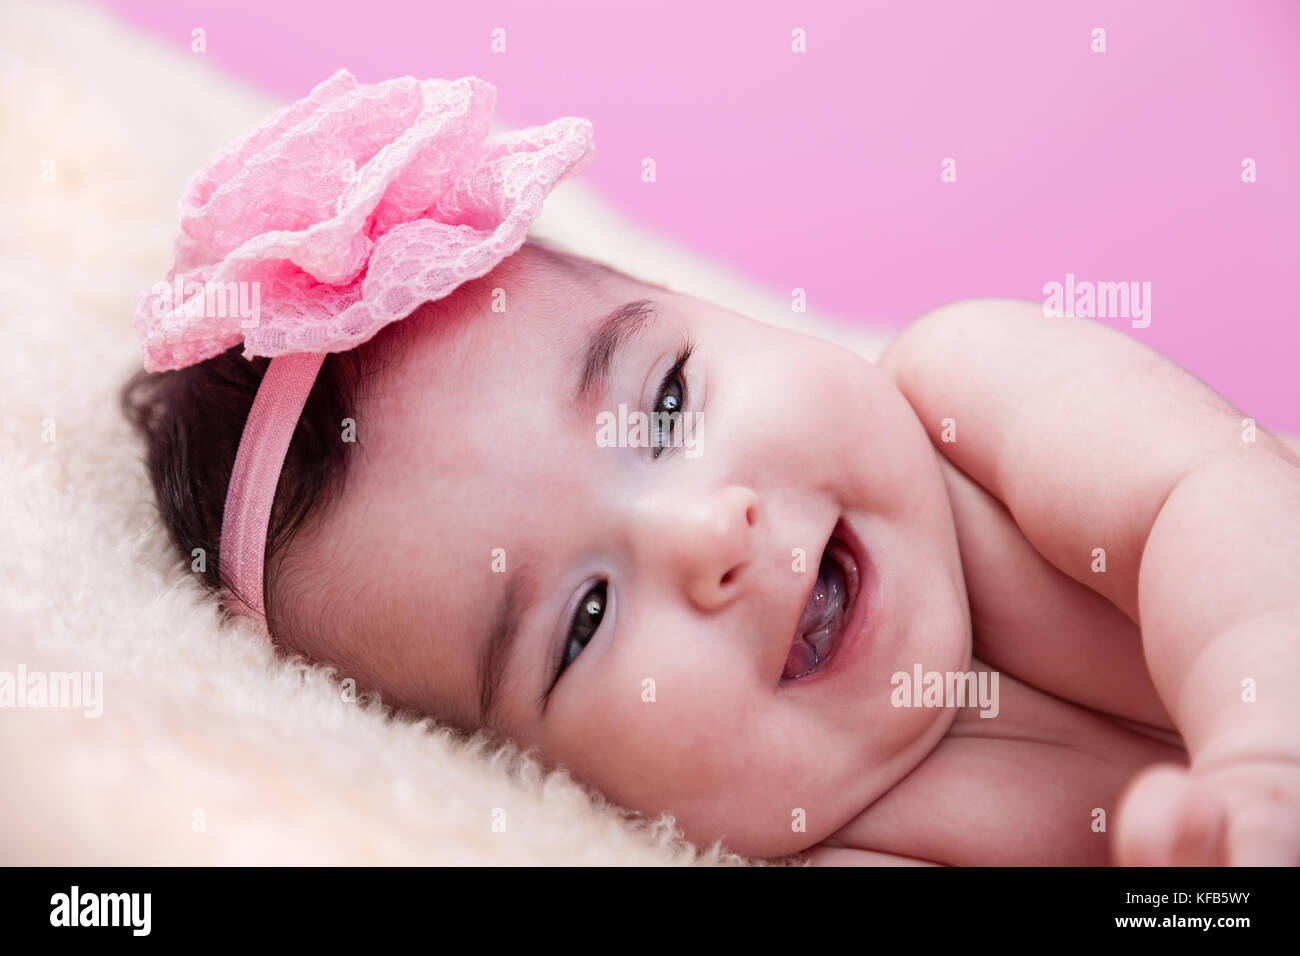 Mignon, joli, heureux, chubby portrait de fille de bébé avec un grand sourire, riant. Nu ou nu sur une couverture moelleuse. Serre-tête à fleurs roses. Bébé de quatre mois Banque D'Images